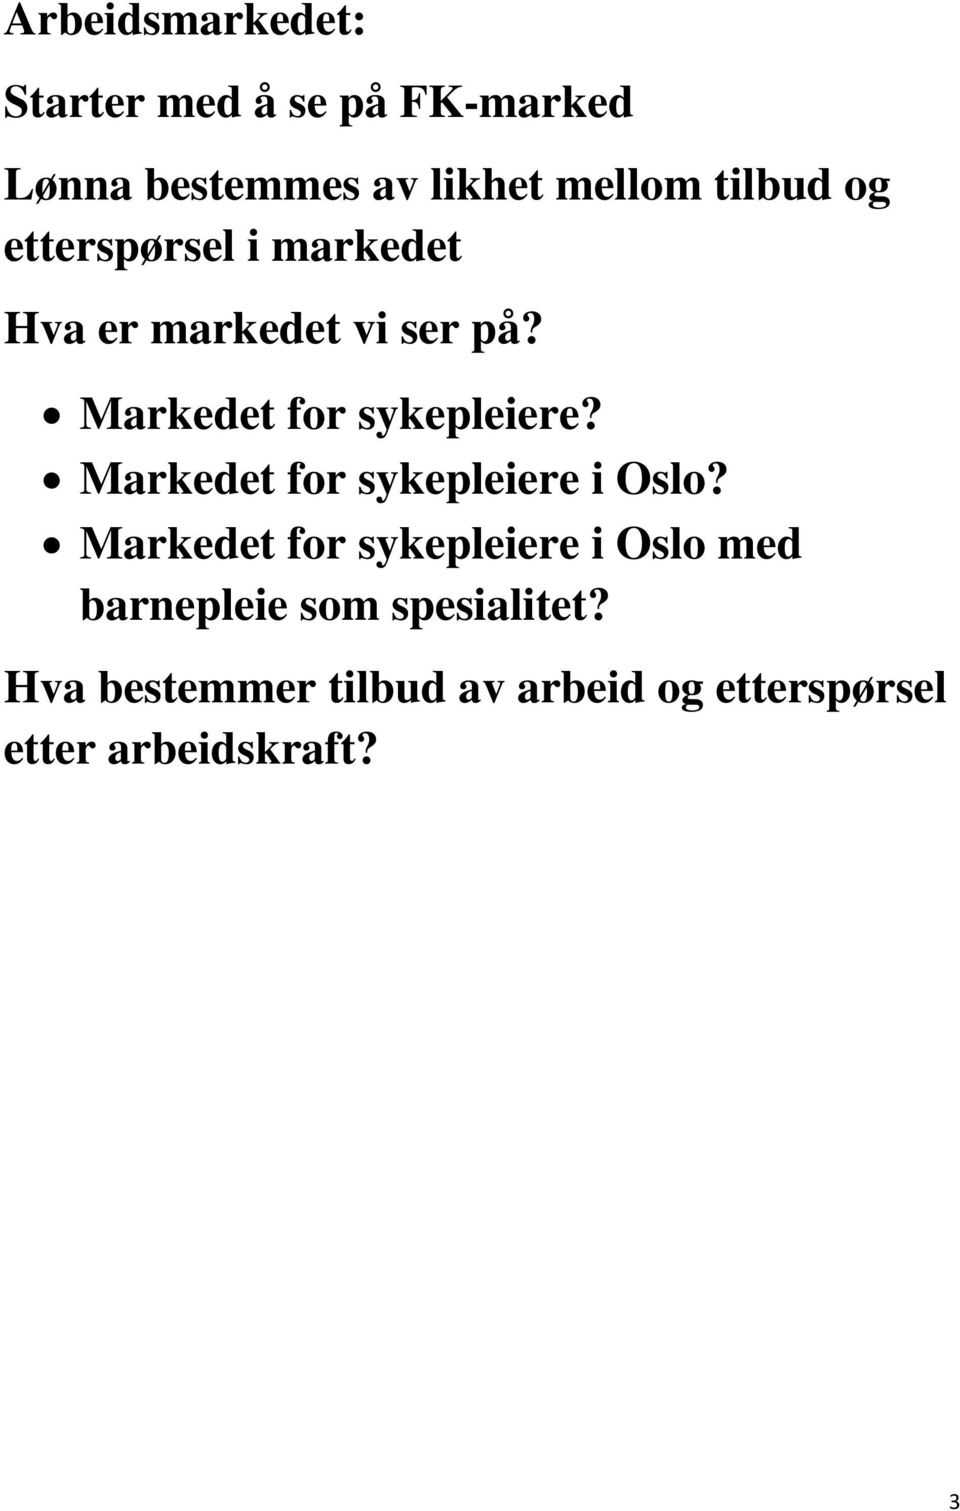 Markedet for sykepleiere? Markedet for sykepleiere i Oslo?